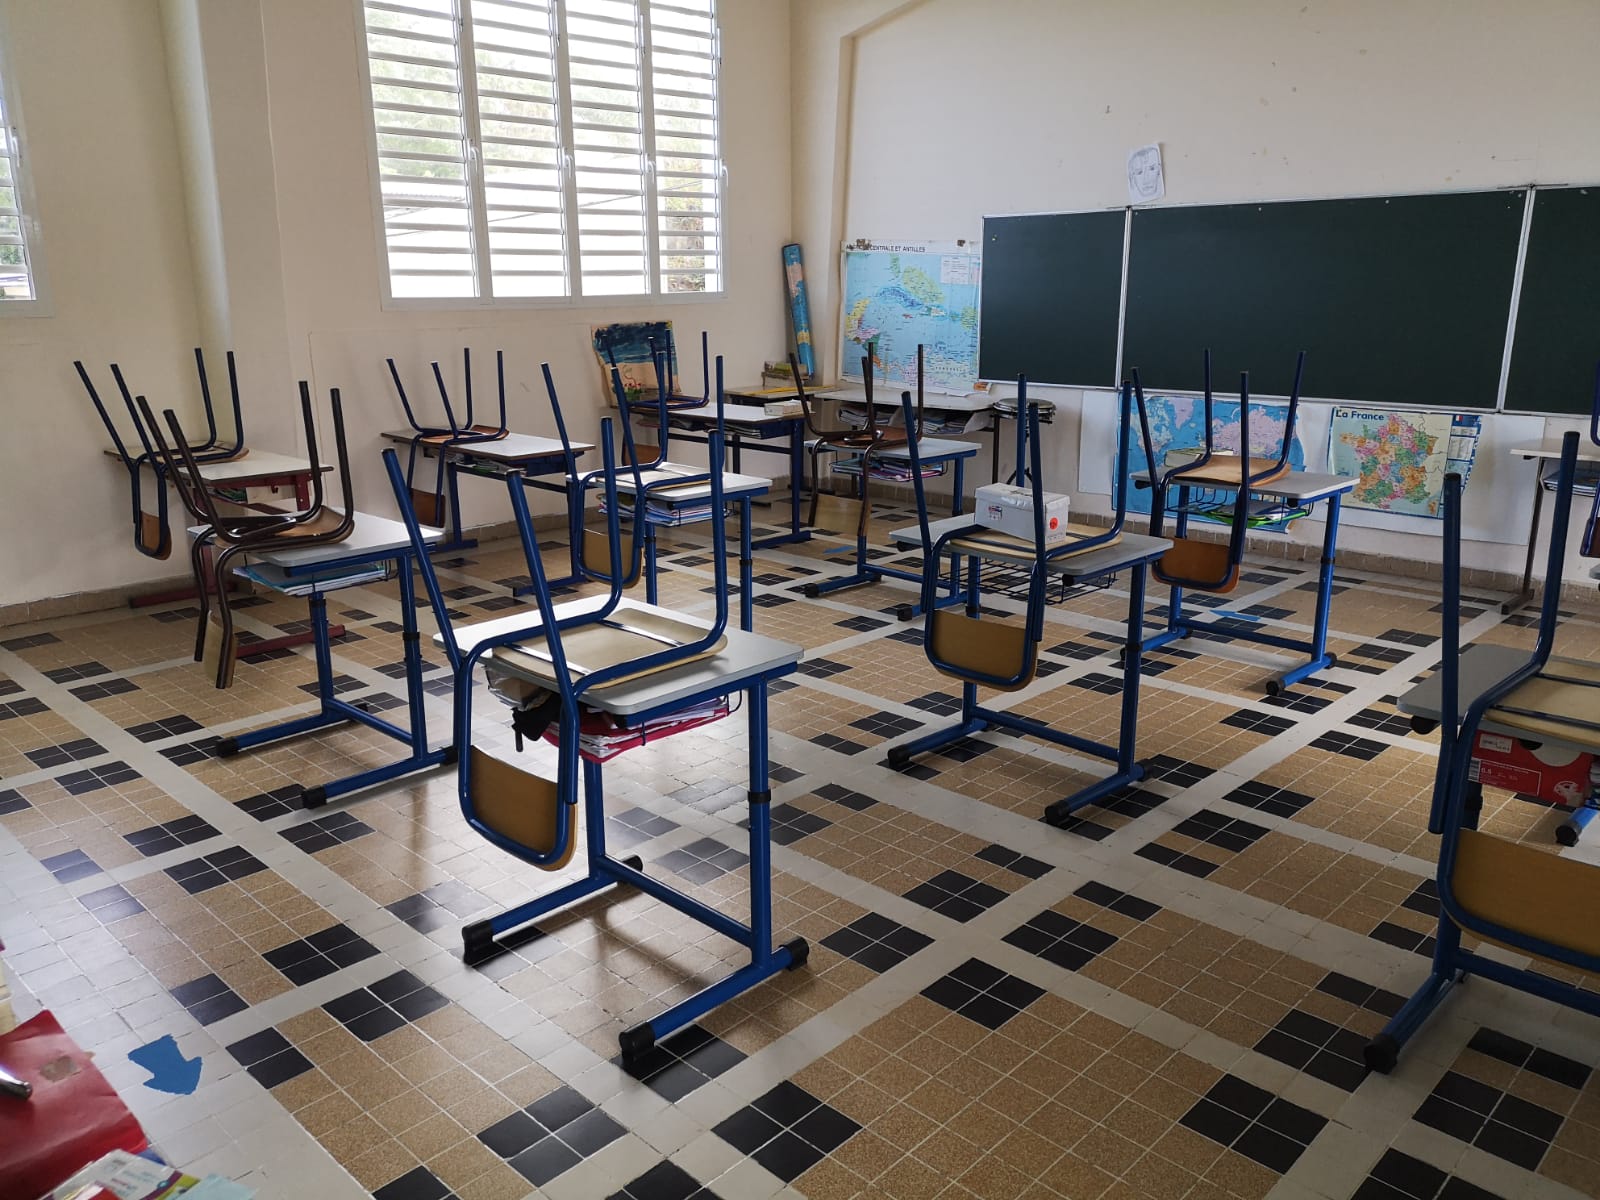     Des écoles de Fort-de-France victimes de cambriolages et de vandalisme

